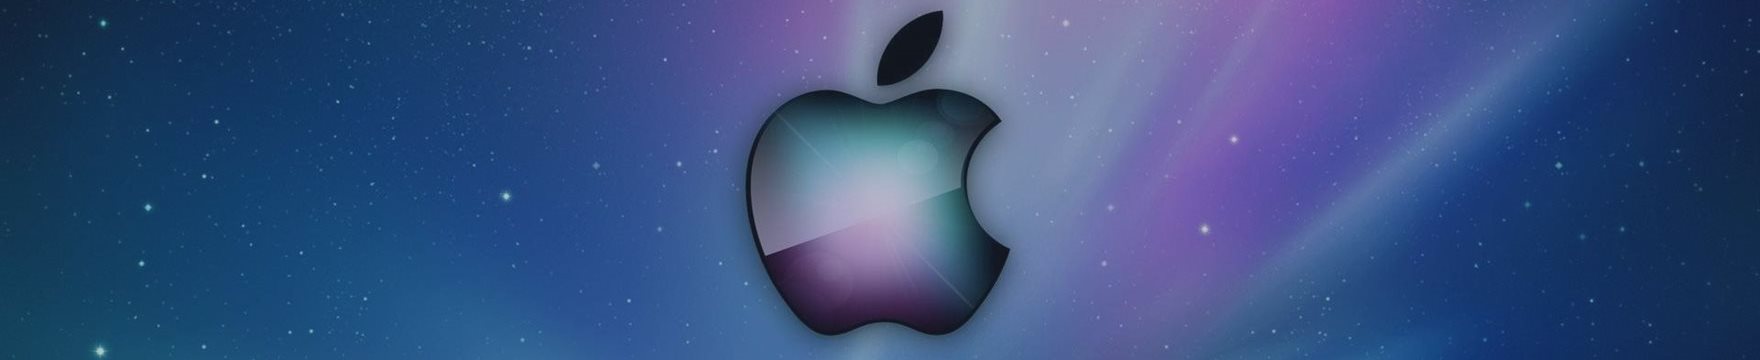 Apple выпустит новый iPhone в сентябре